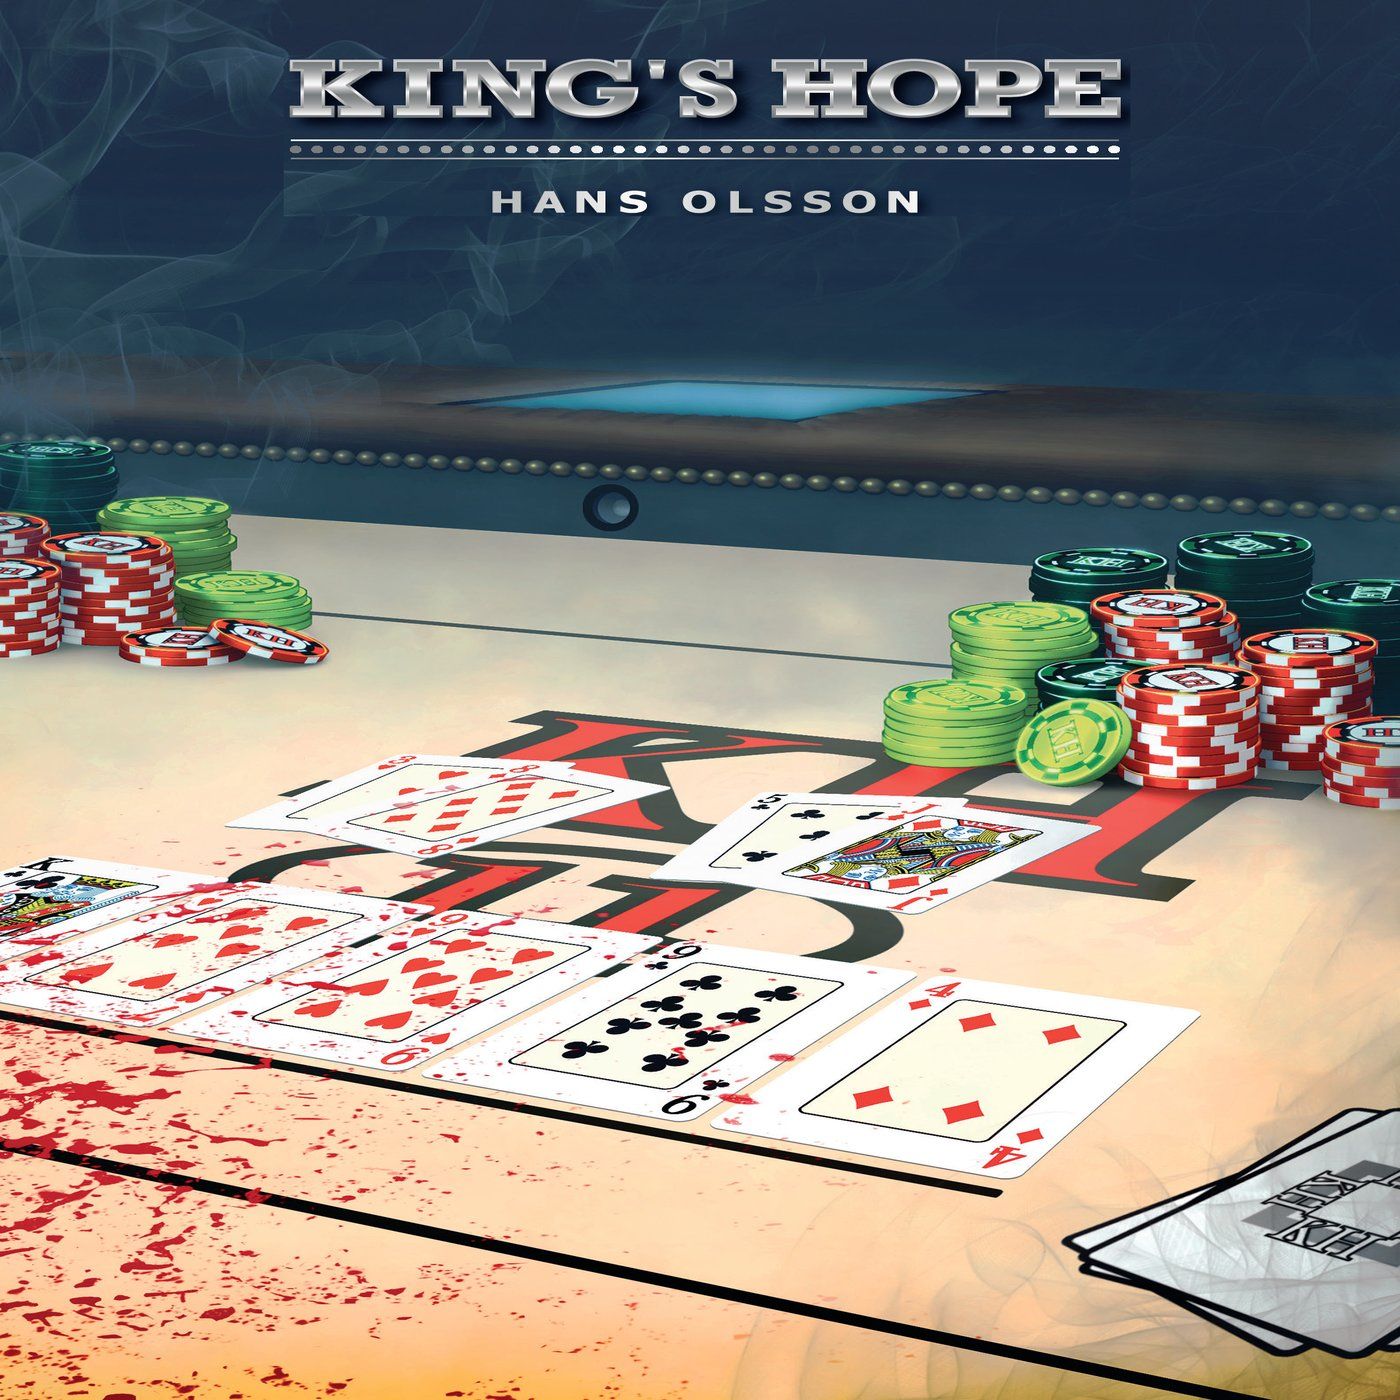 King's Hope, ljudbok av Hans Olsson